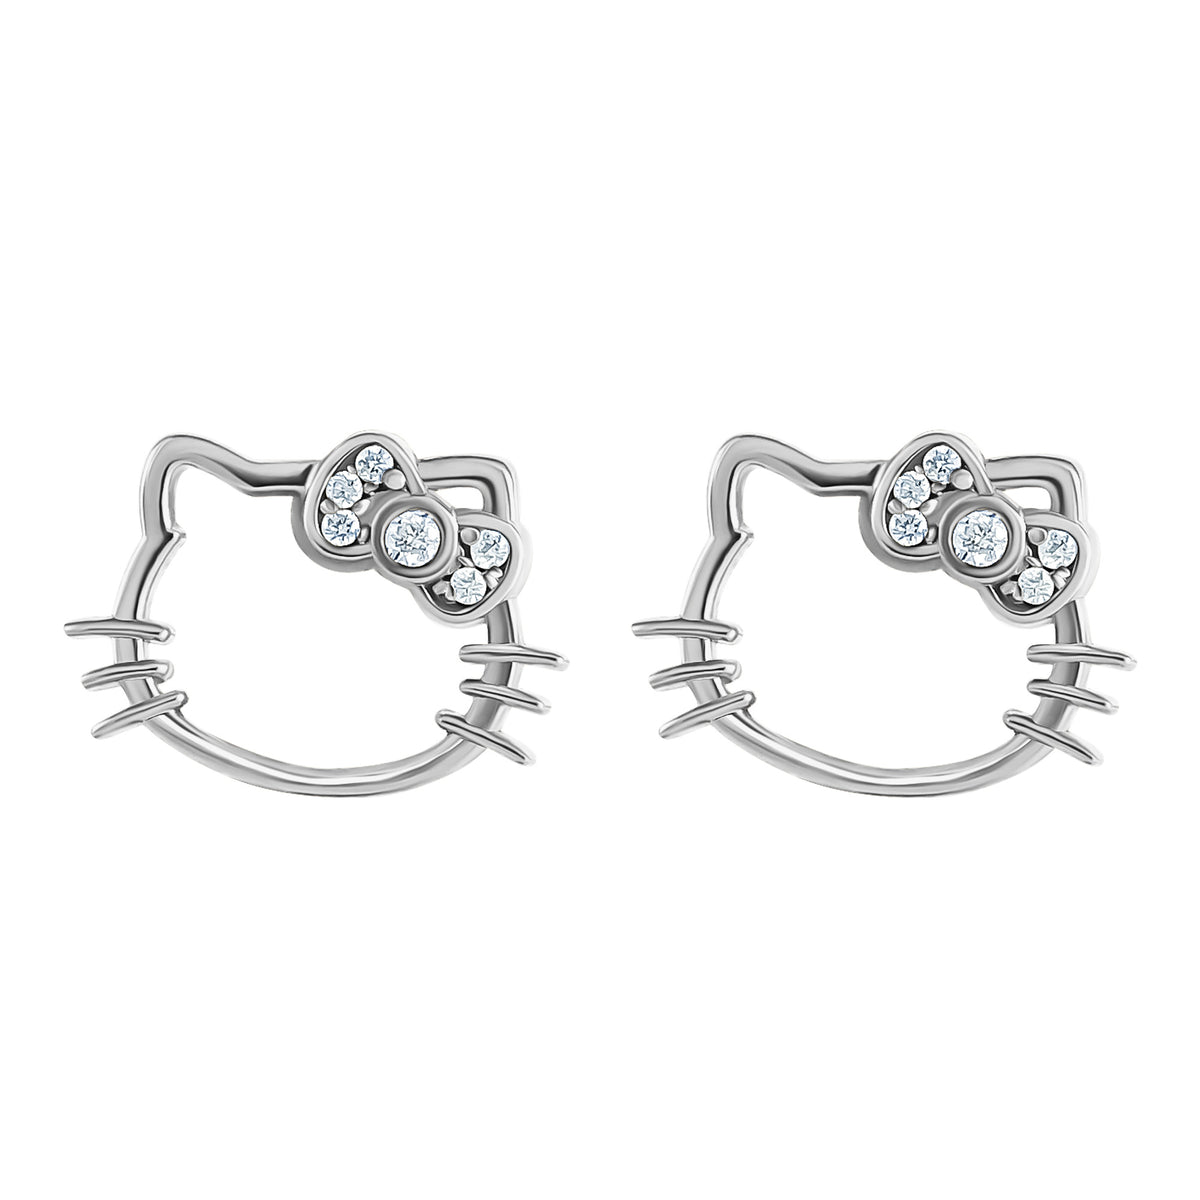 Hello Kitty Sterling Silver Silhouette Diamond Stud Earrings Jewelry JACMEL JEWELRY INC   